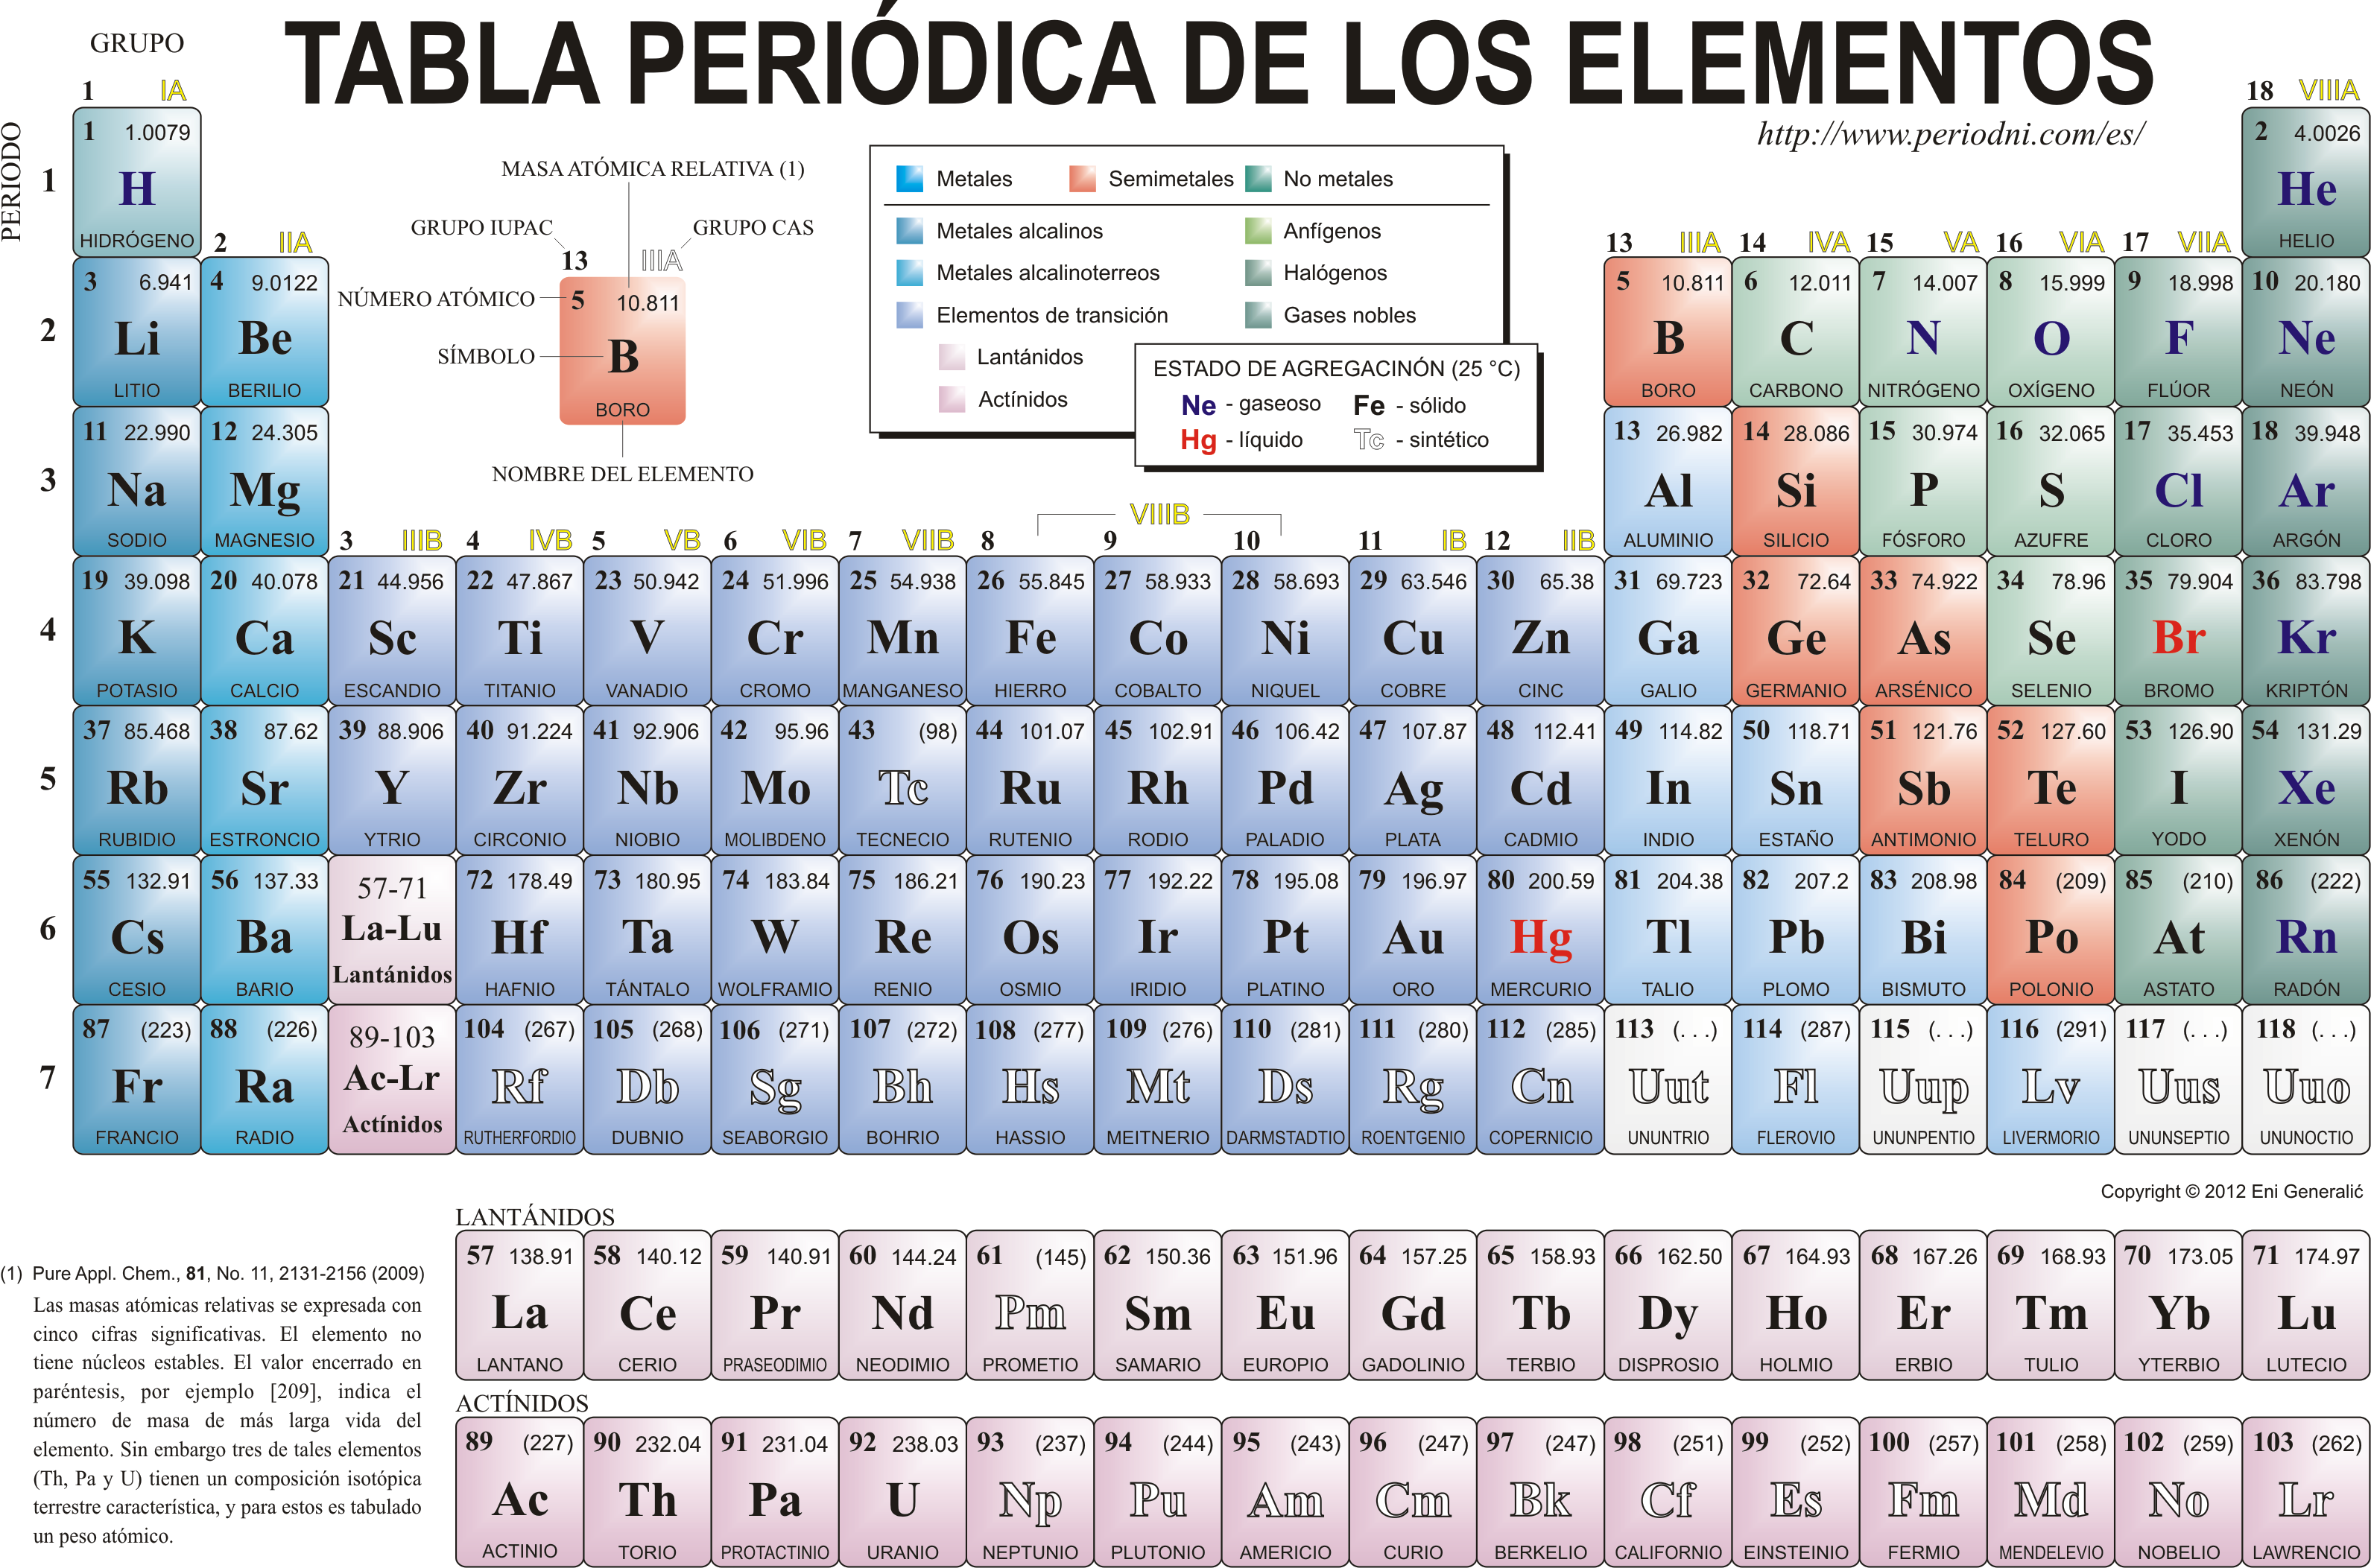 Hierro (Fe): Propiedades químicas del elemento de la tabla periódica